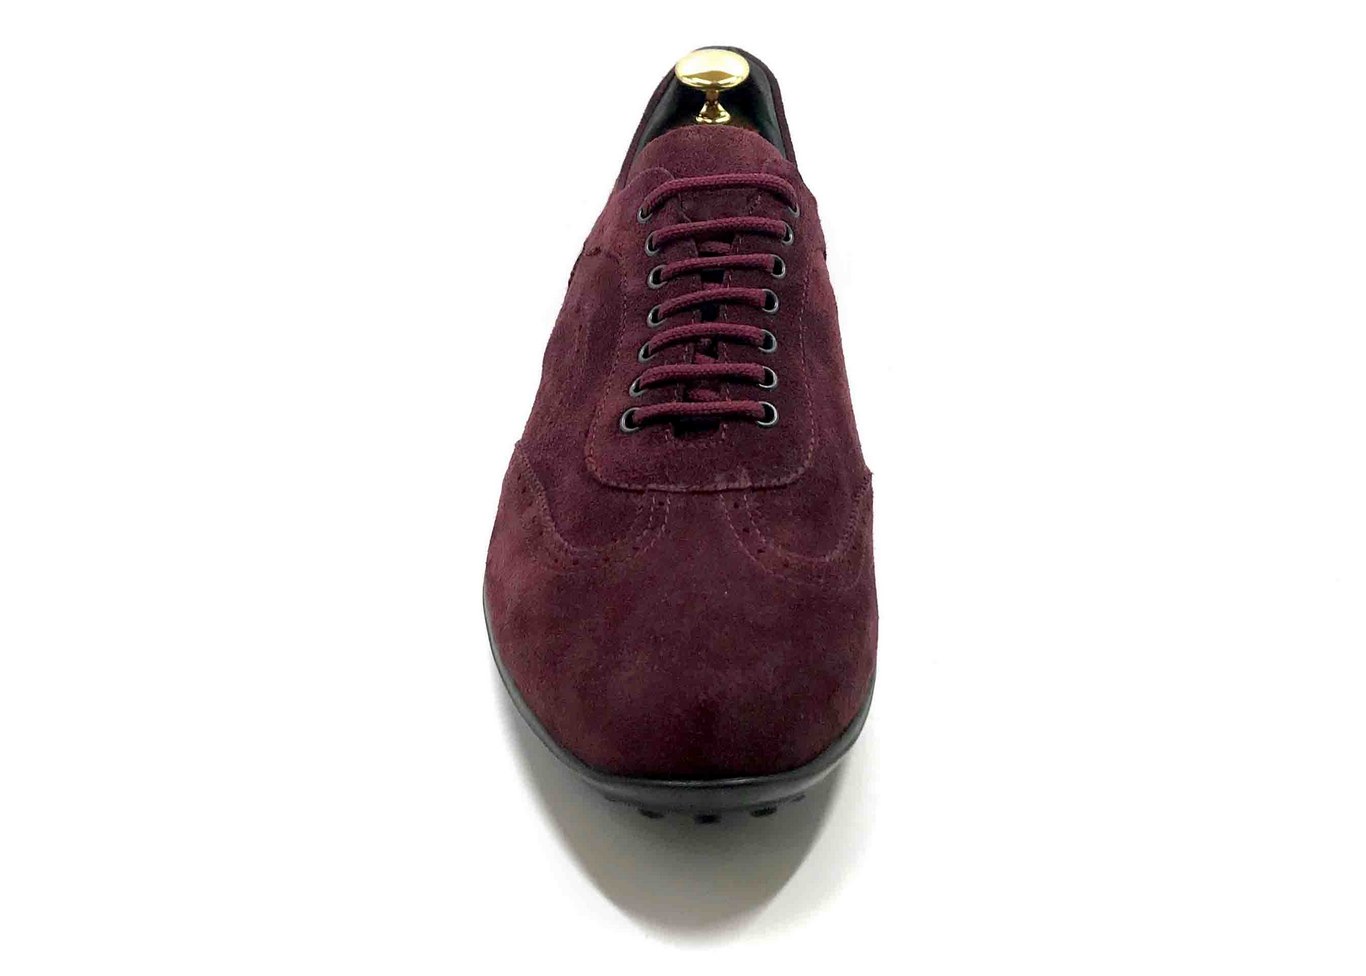 Sneaker in camoscio Bordeaux scuro con soletta estraibile